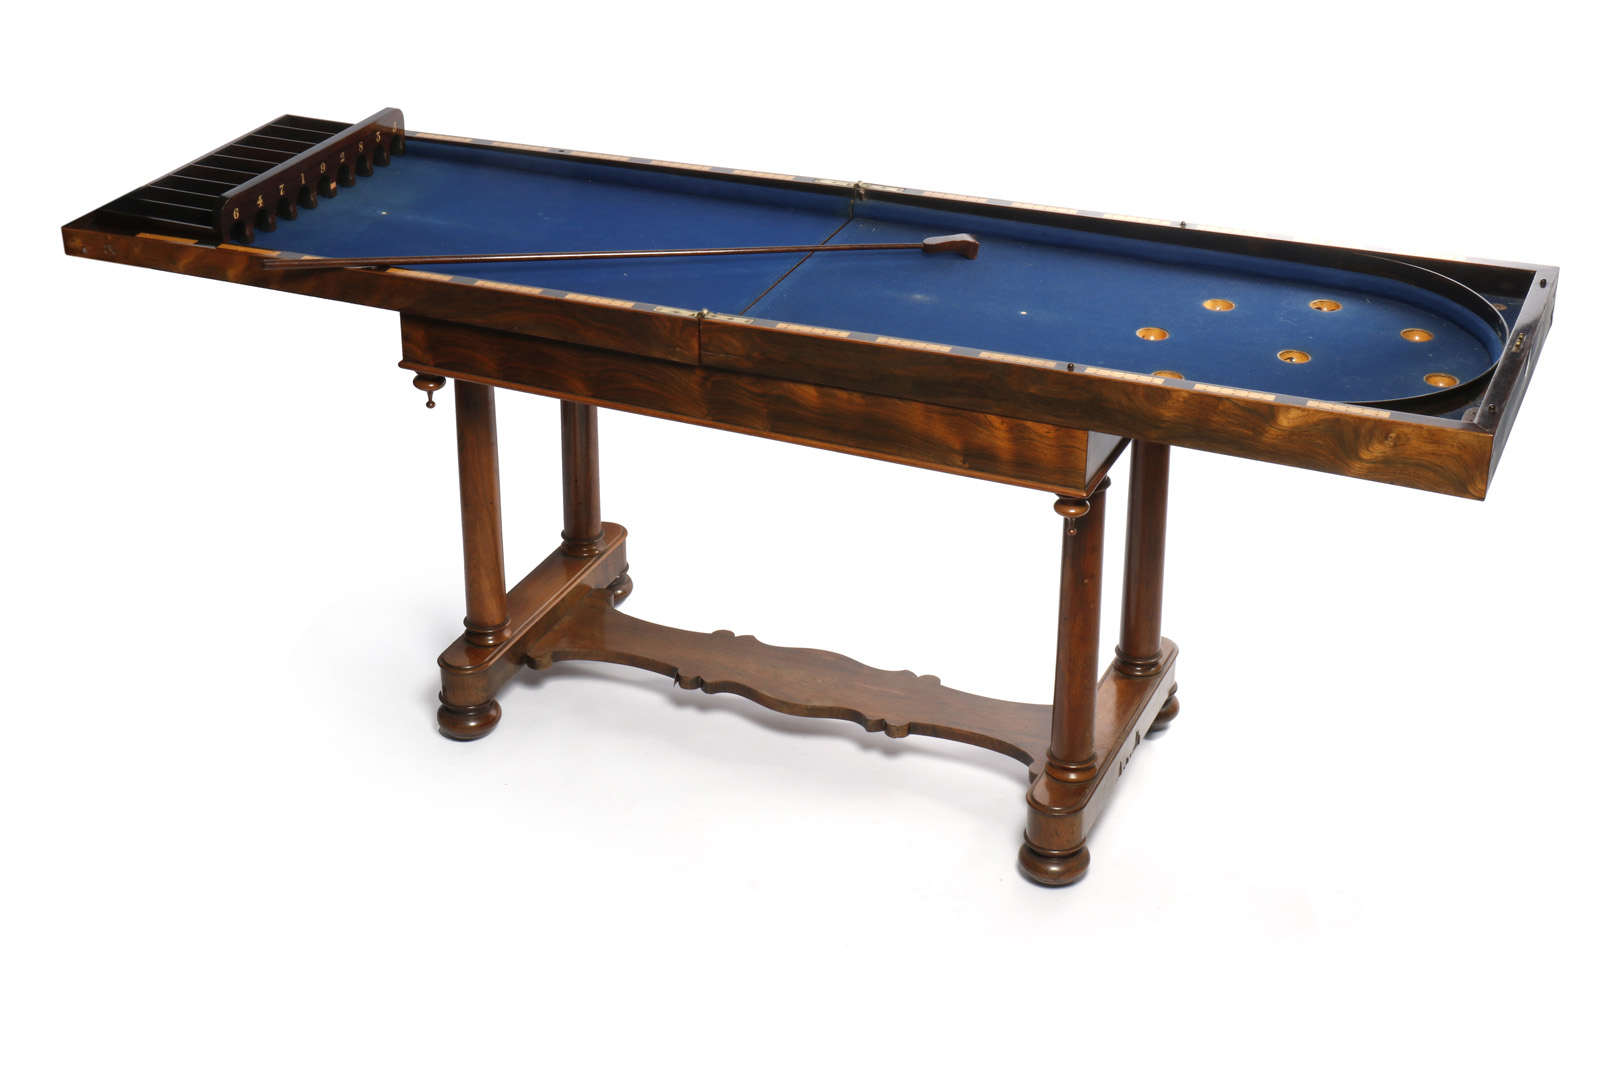 Schiebespiel Shuffle Board, eingebaut in Mahagoni-Holztisch, aufklappbar, mit blauem Filz bezogen,